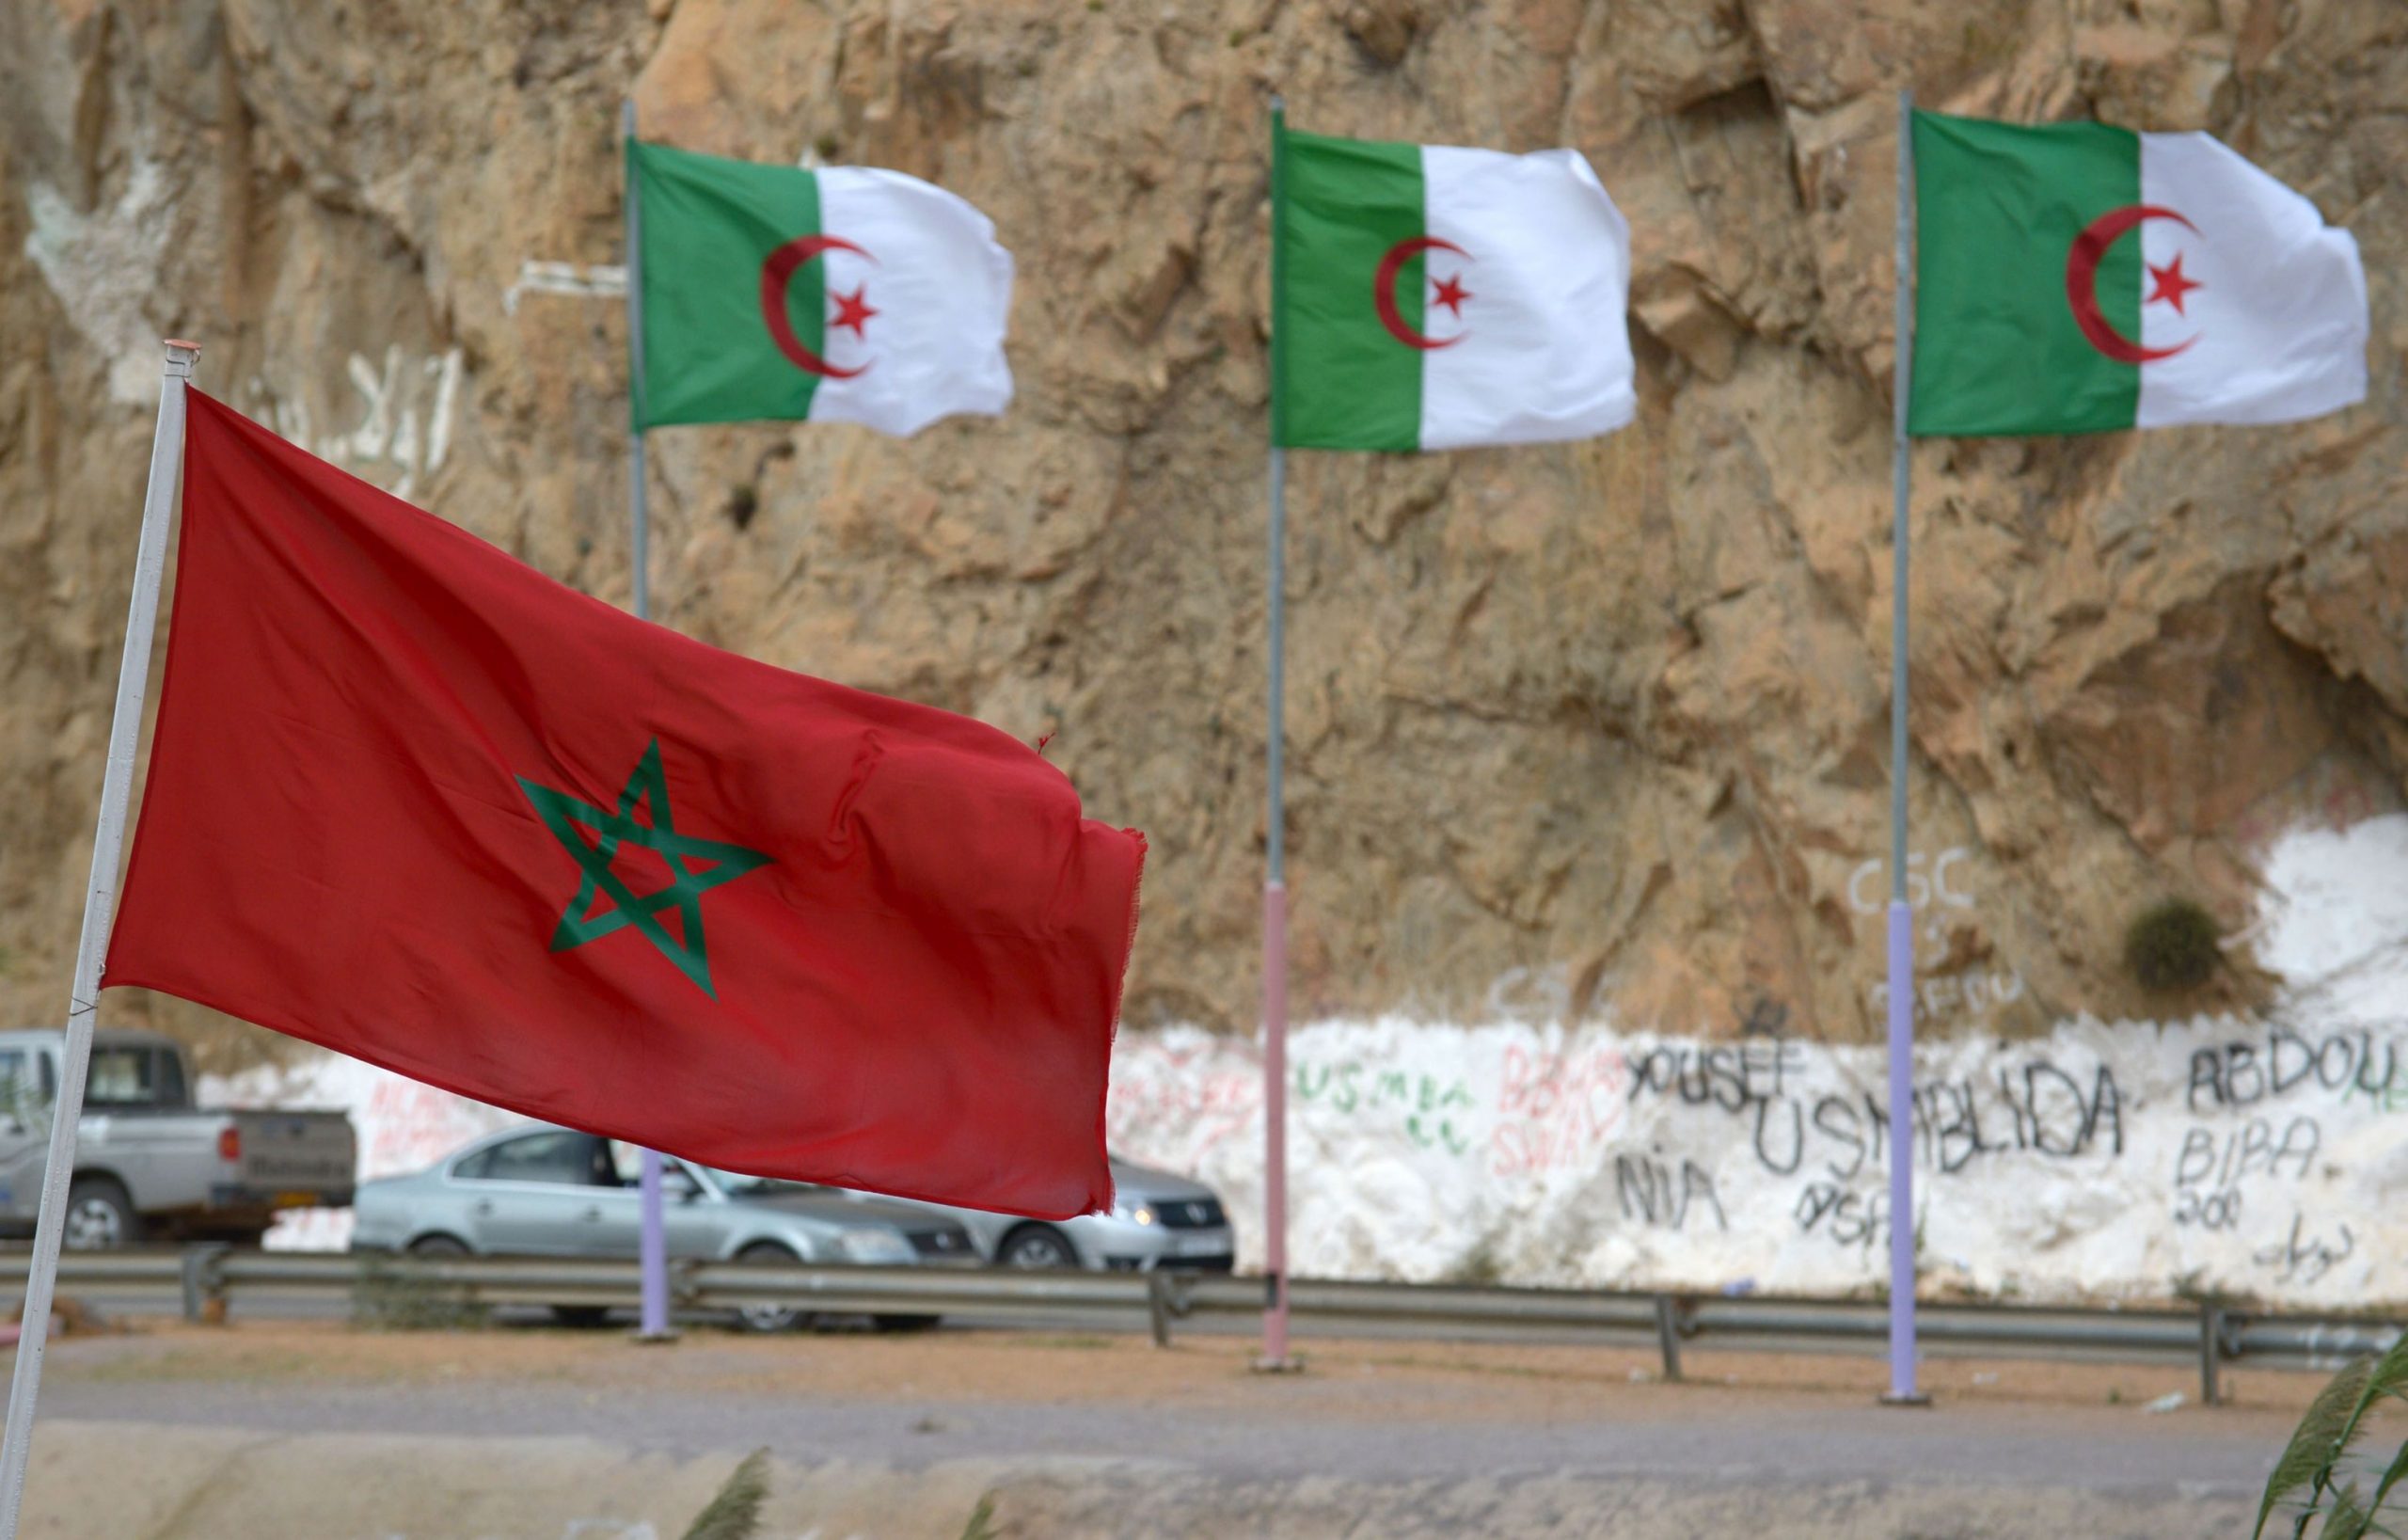 خبير ينتقد توظيف الجزائر للهجرة غير النظامية لأهداف جيو-سياسية